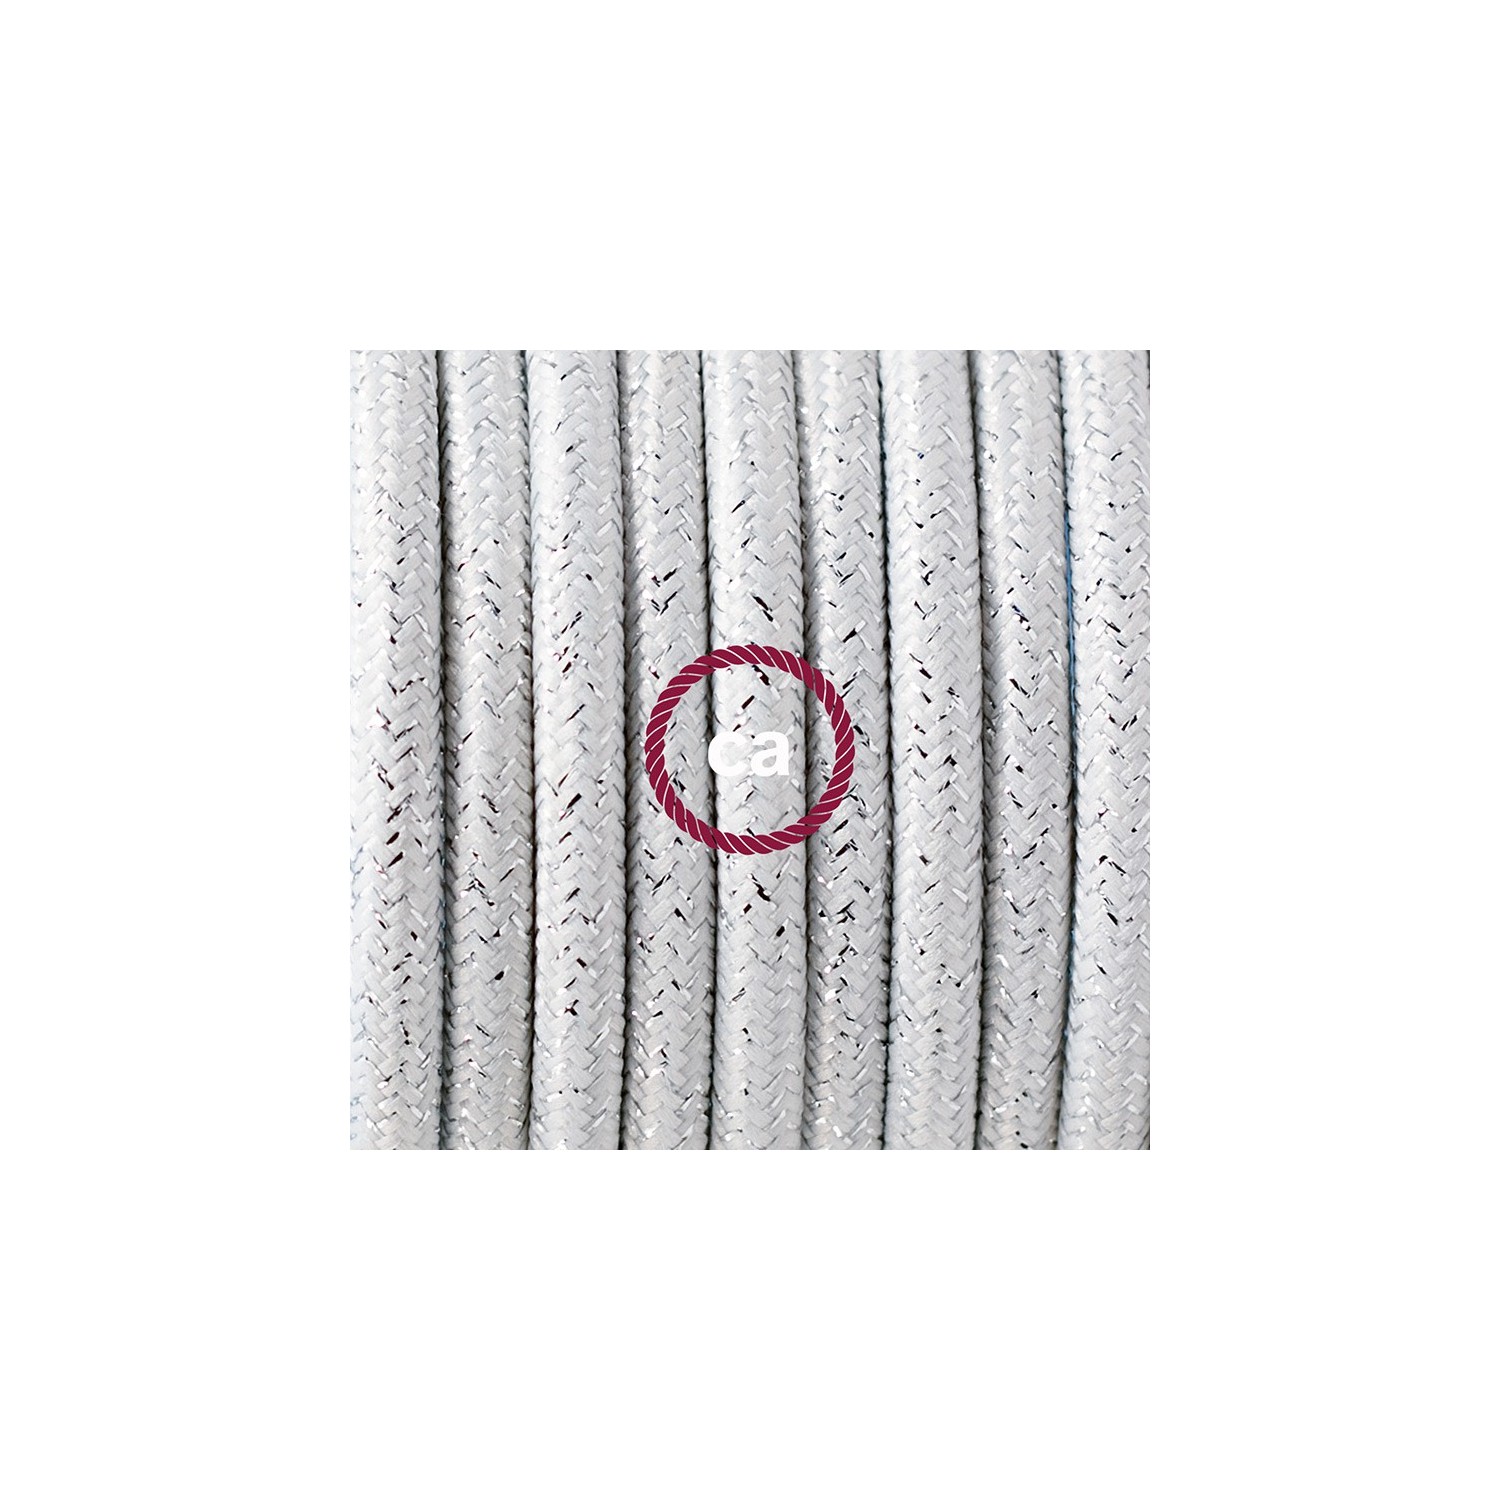 Ronde flexibele textielkabel van viscose met schakelaar en stekker. RL01 - lame (glinsterend) wit 1,80 m.